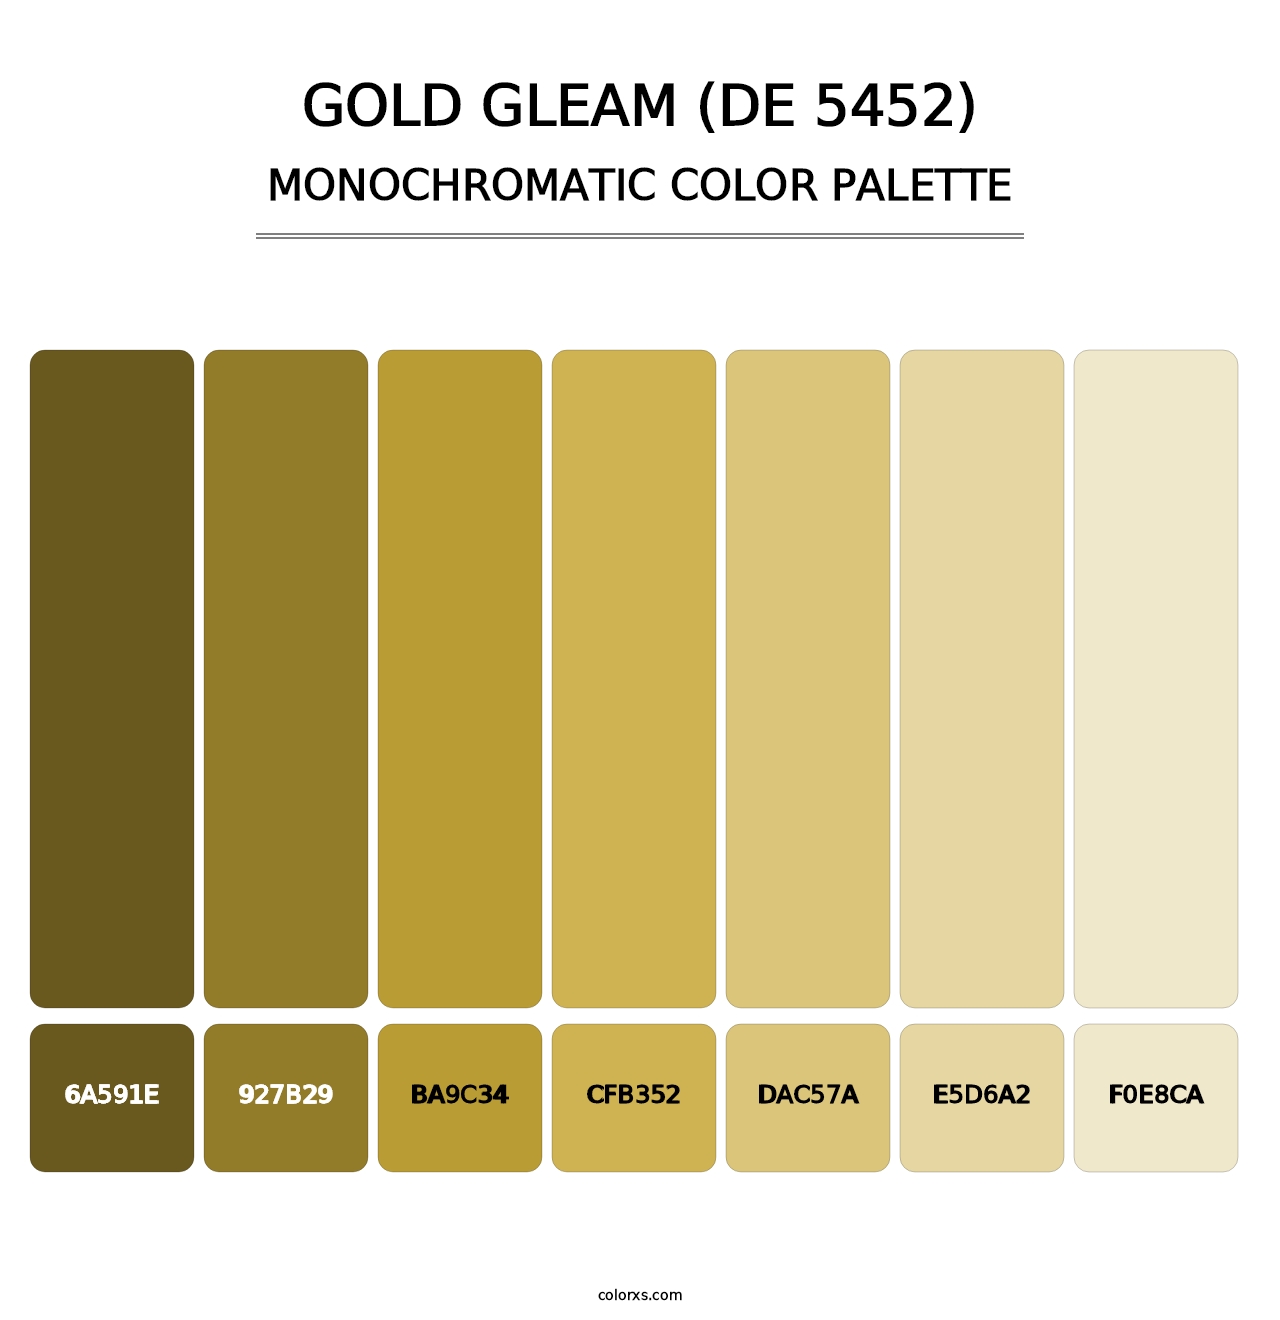 Gold Gleam (DE 5452) - Monochromatic Color Palette